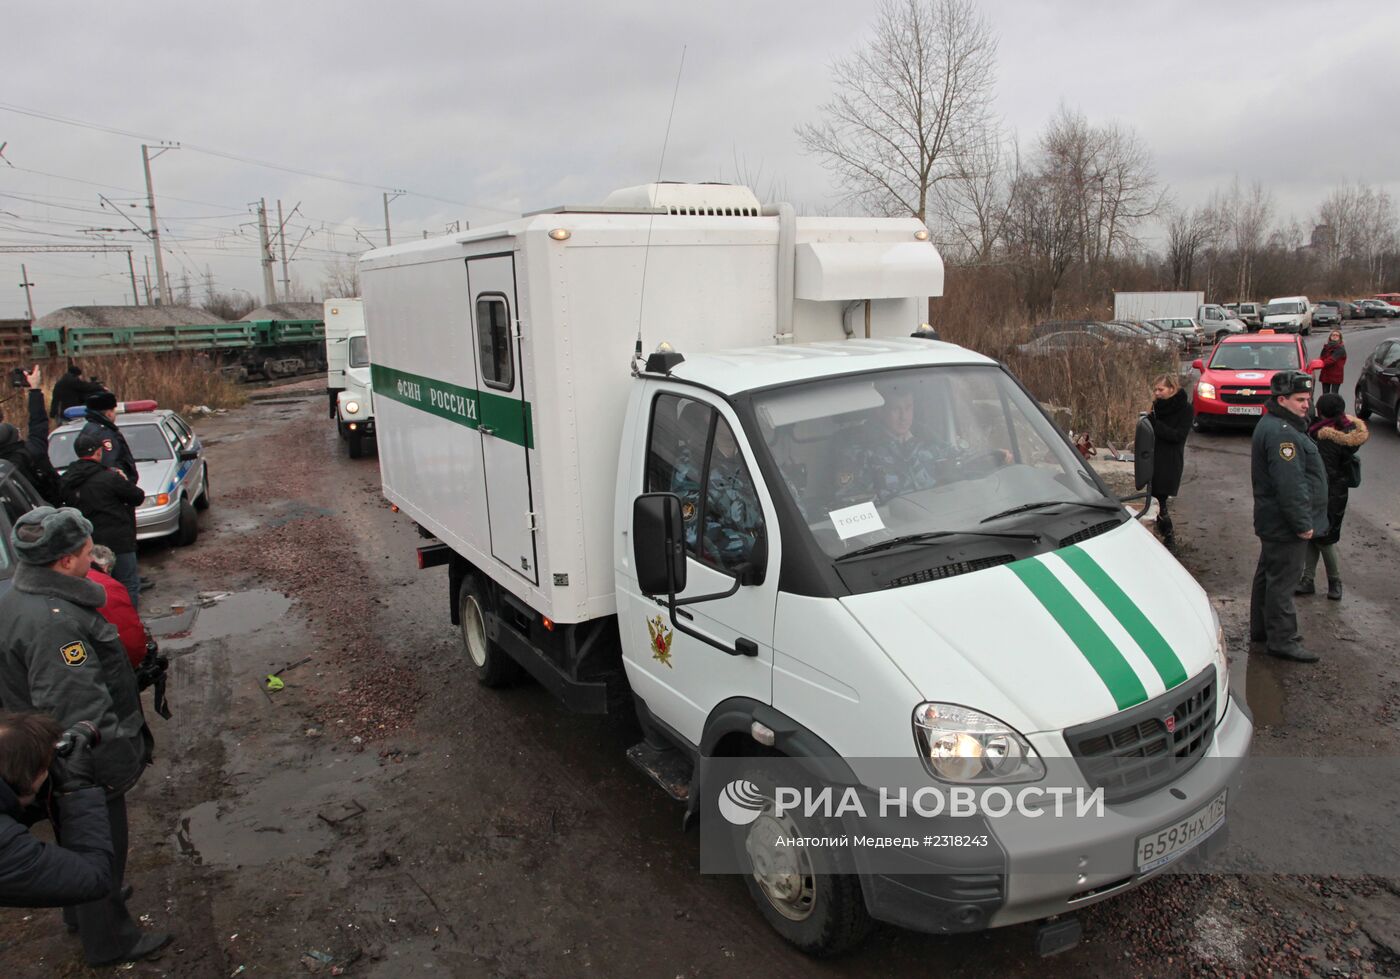 Активистов Greenpeace предположительно доставили из Мурманска в Санкт-Петербург